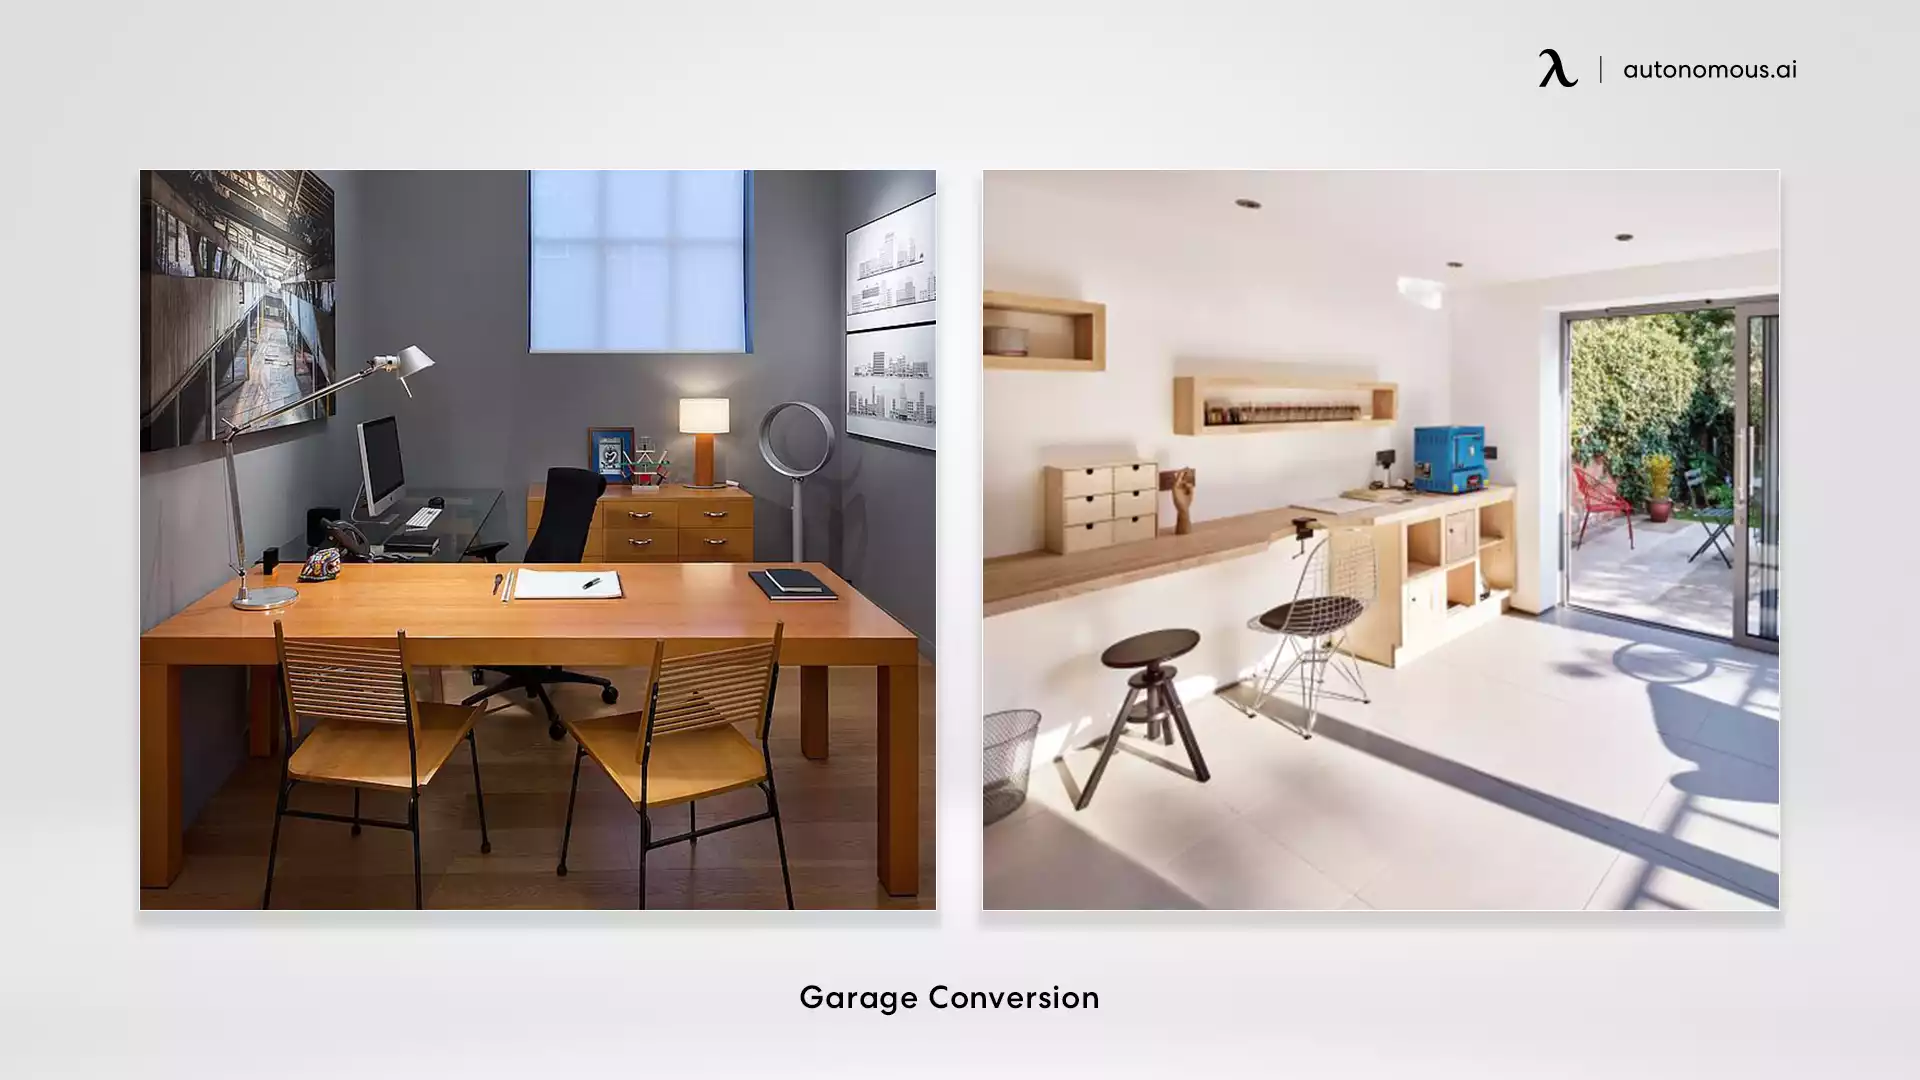 Garage Conversion garden office ideas